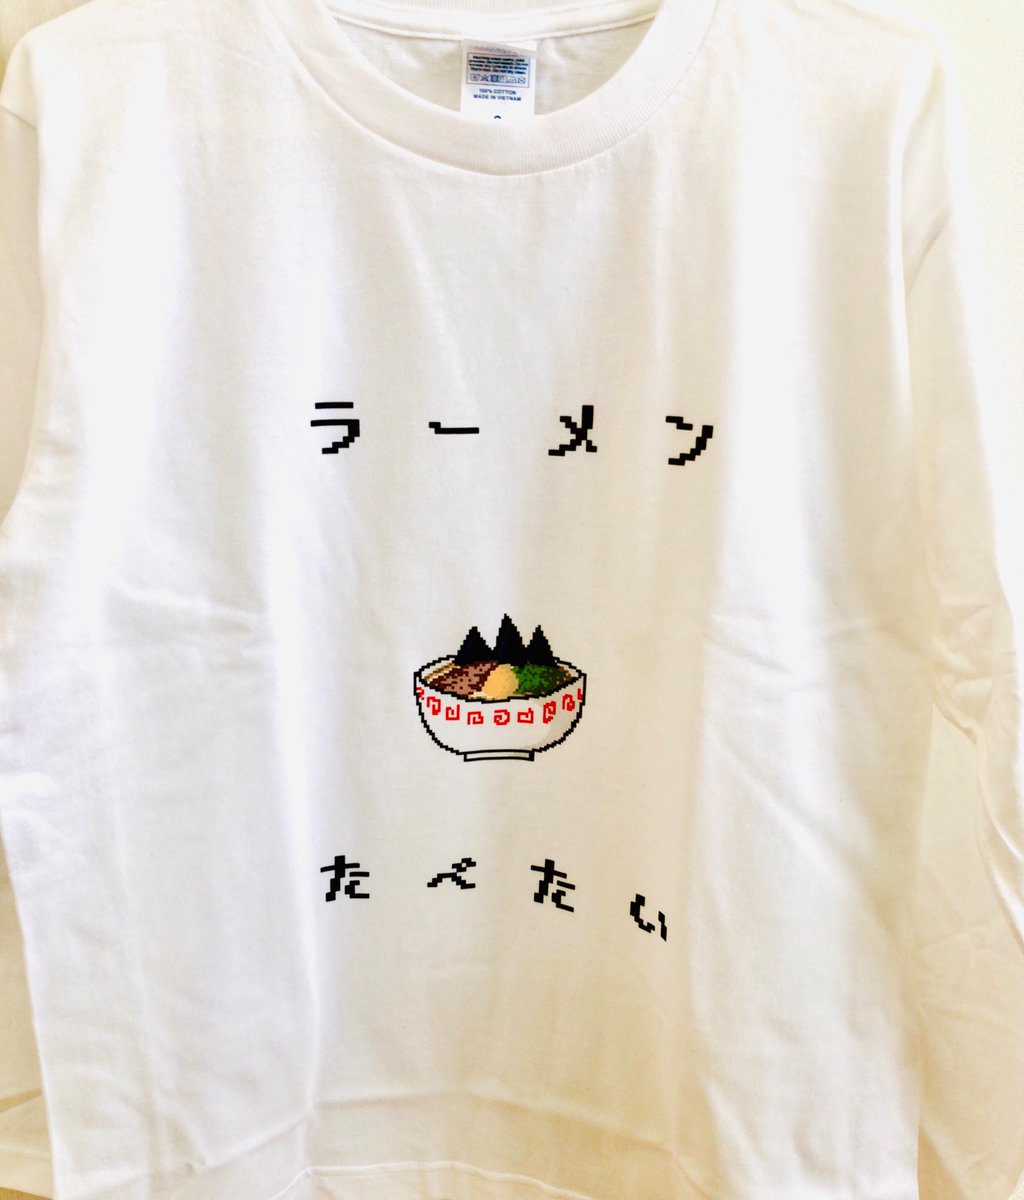 読者様から
奇×屋さん(@kibatuyaya)のTシャツをいただきました。ゲームっぽいドットデザインが可愛いんだな? 